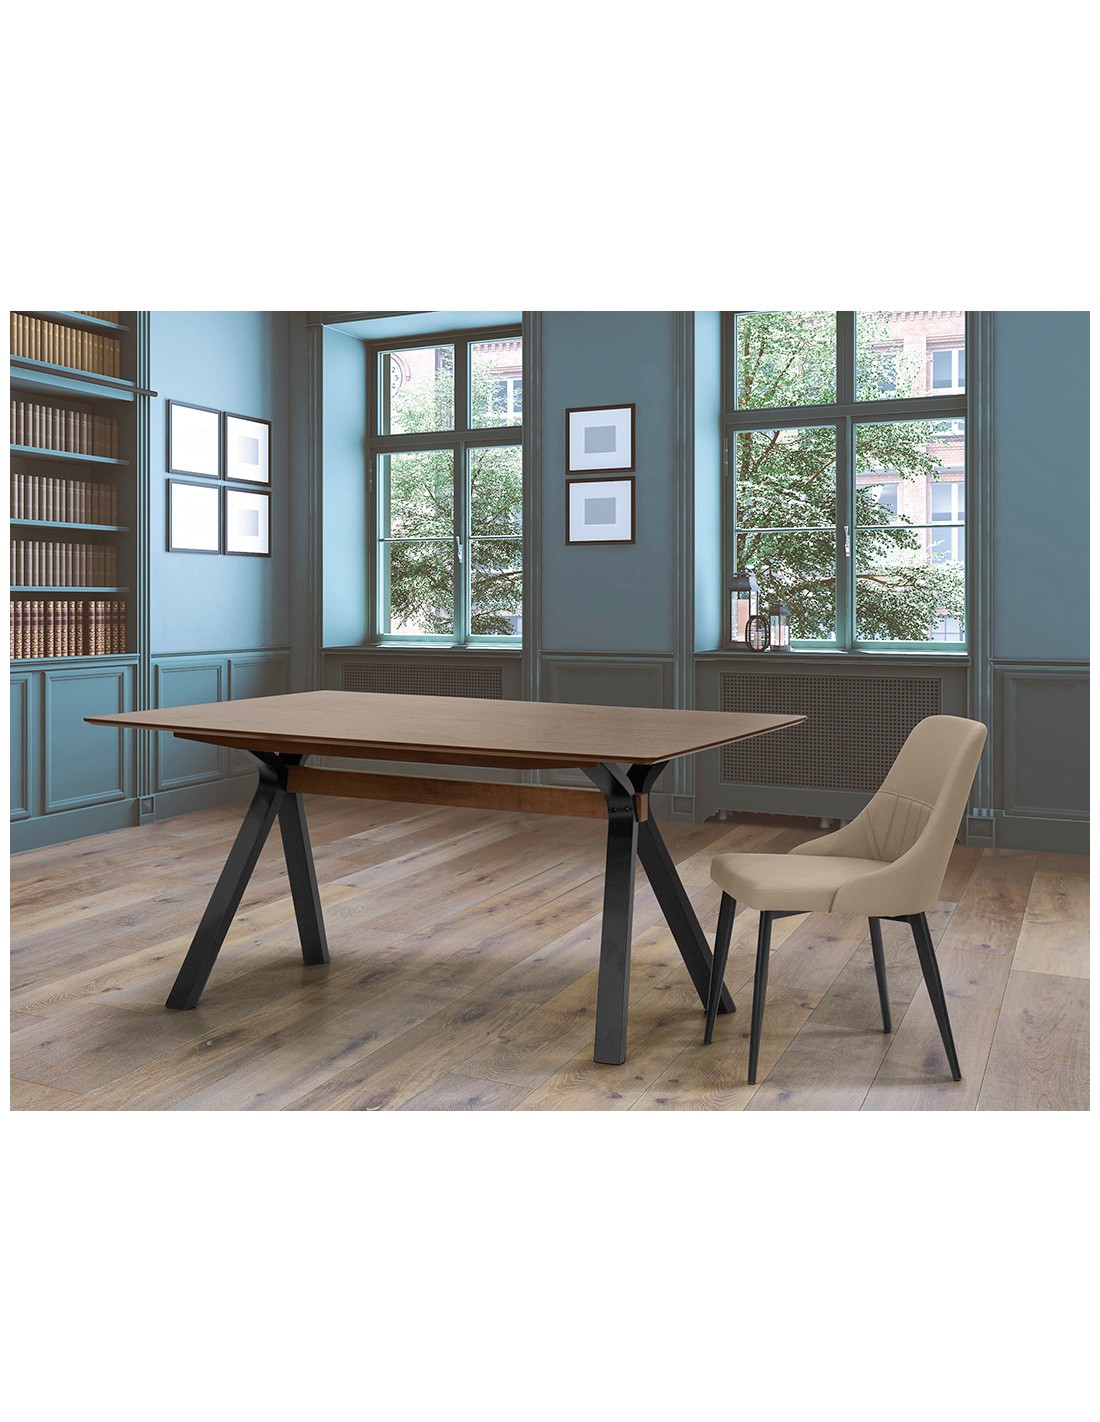 Tavolino - Legno massello - Piano in MDF impiallacciato - cm 160 x 90 x 75 h